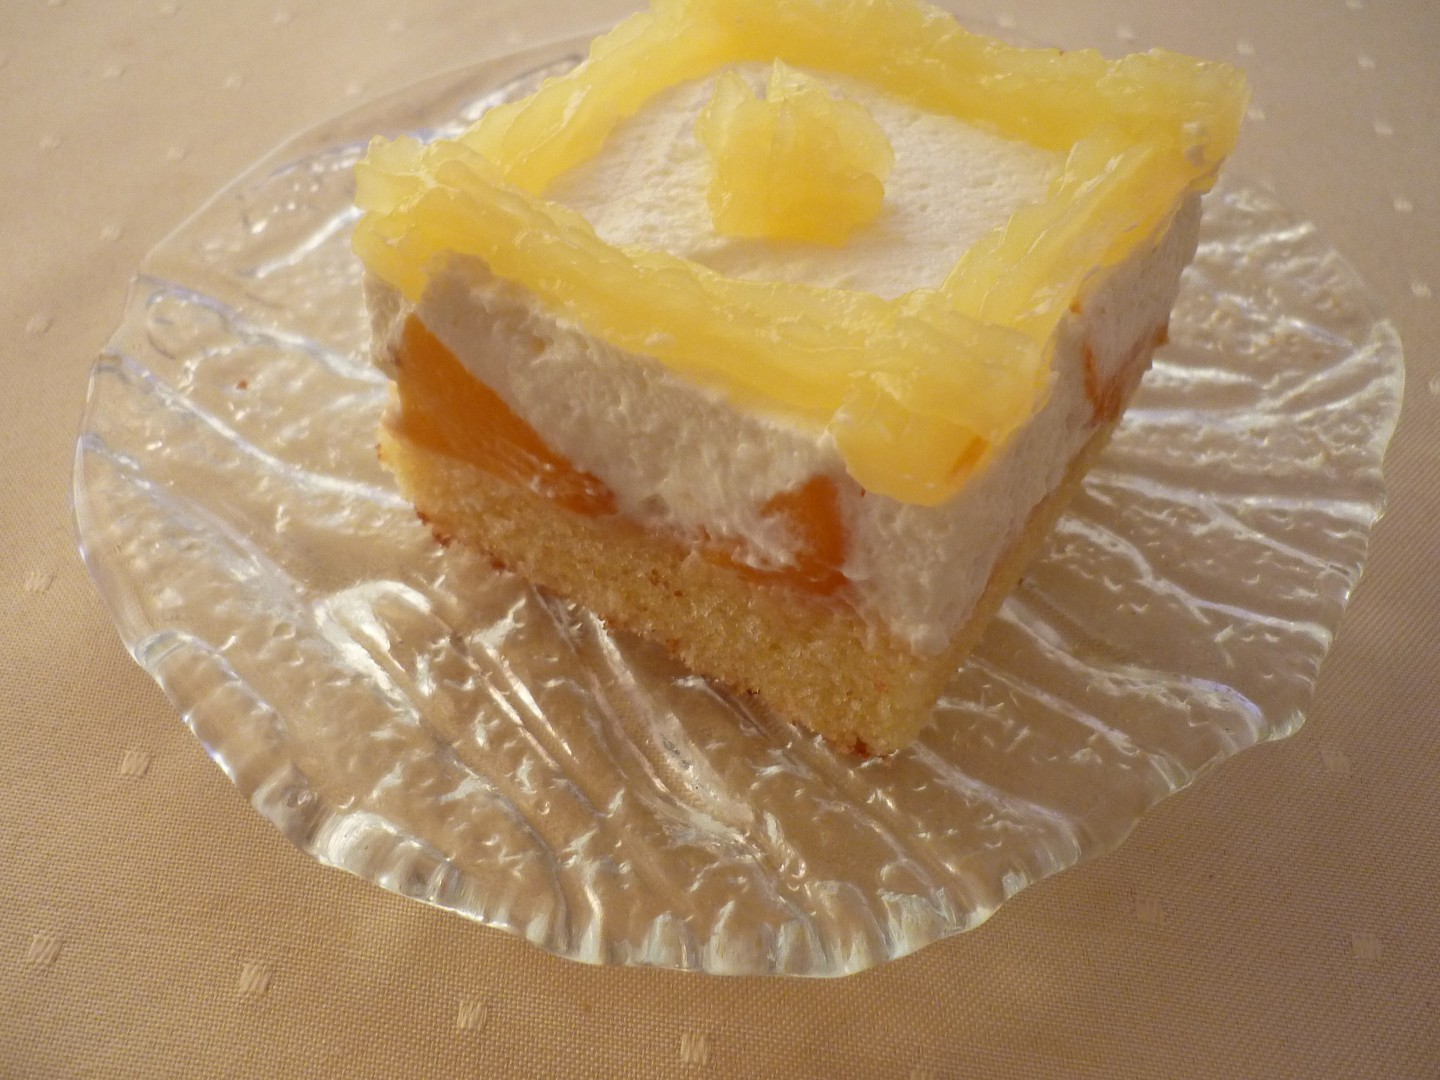 Broskvový koláč z pudingového těsta